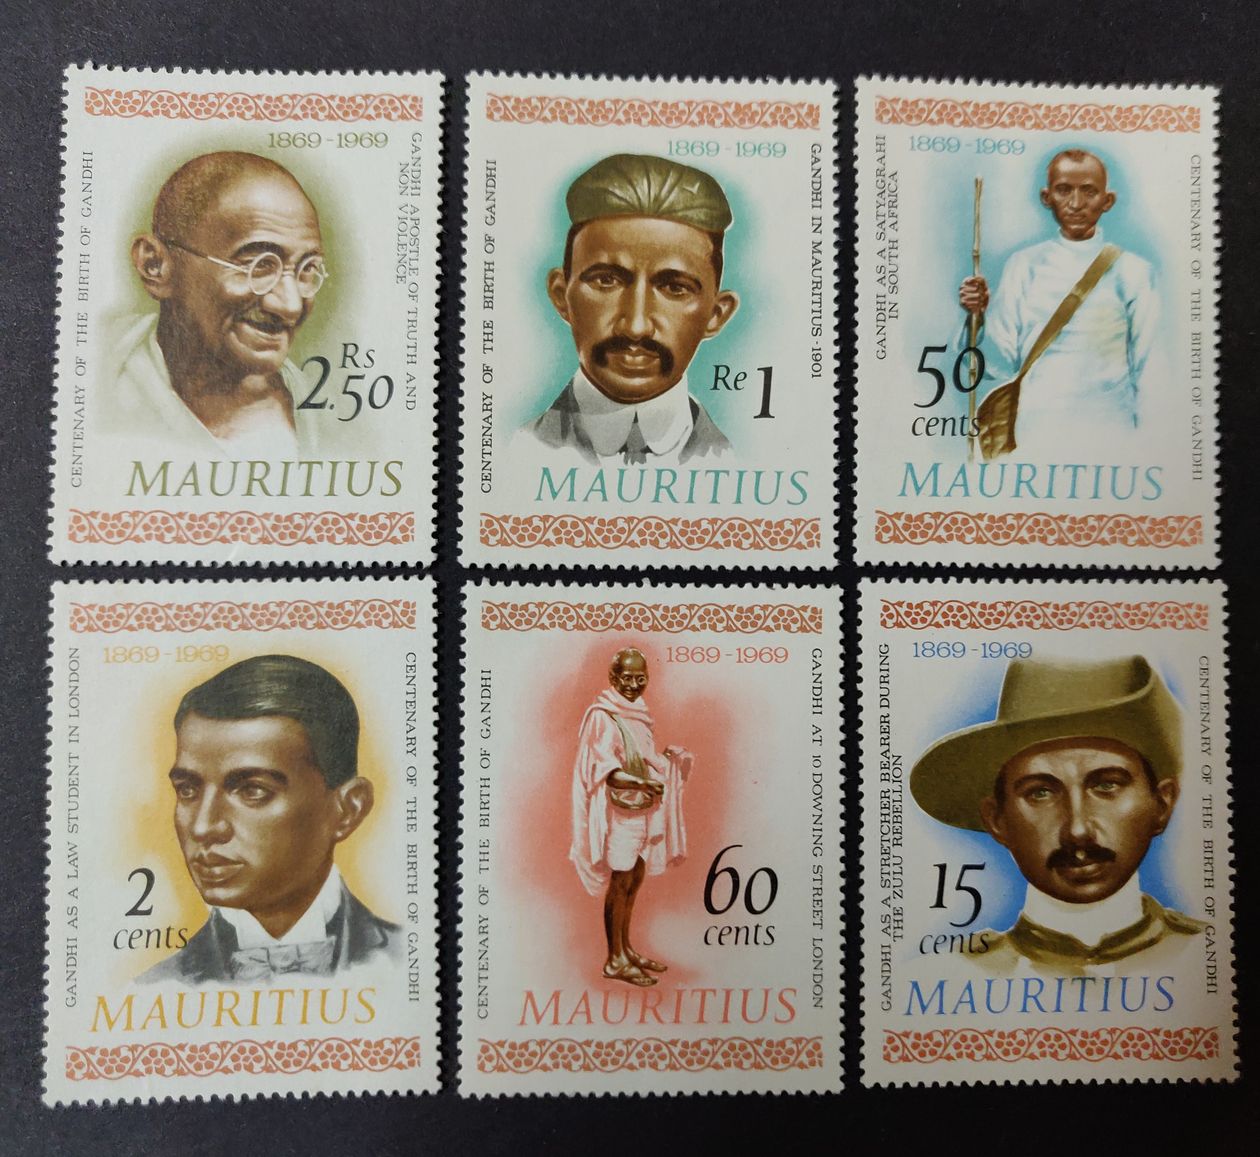 दुनिया के चालीस देश जारी करेंगे गांधी पर विशेष डाक टिकट...गांधी की 150वीं जन्मशती